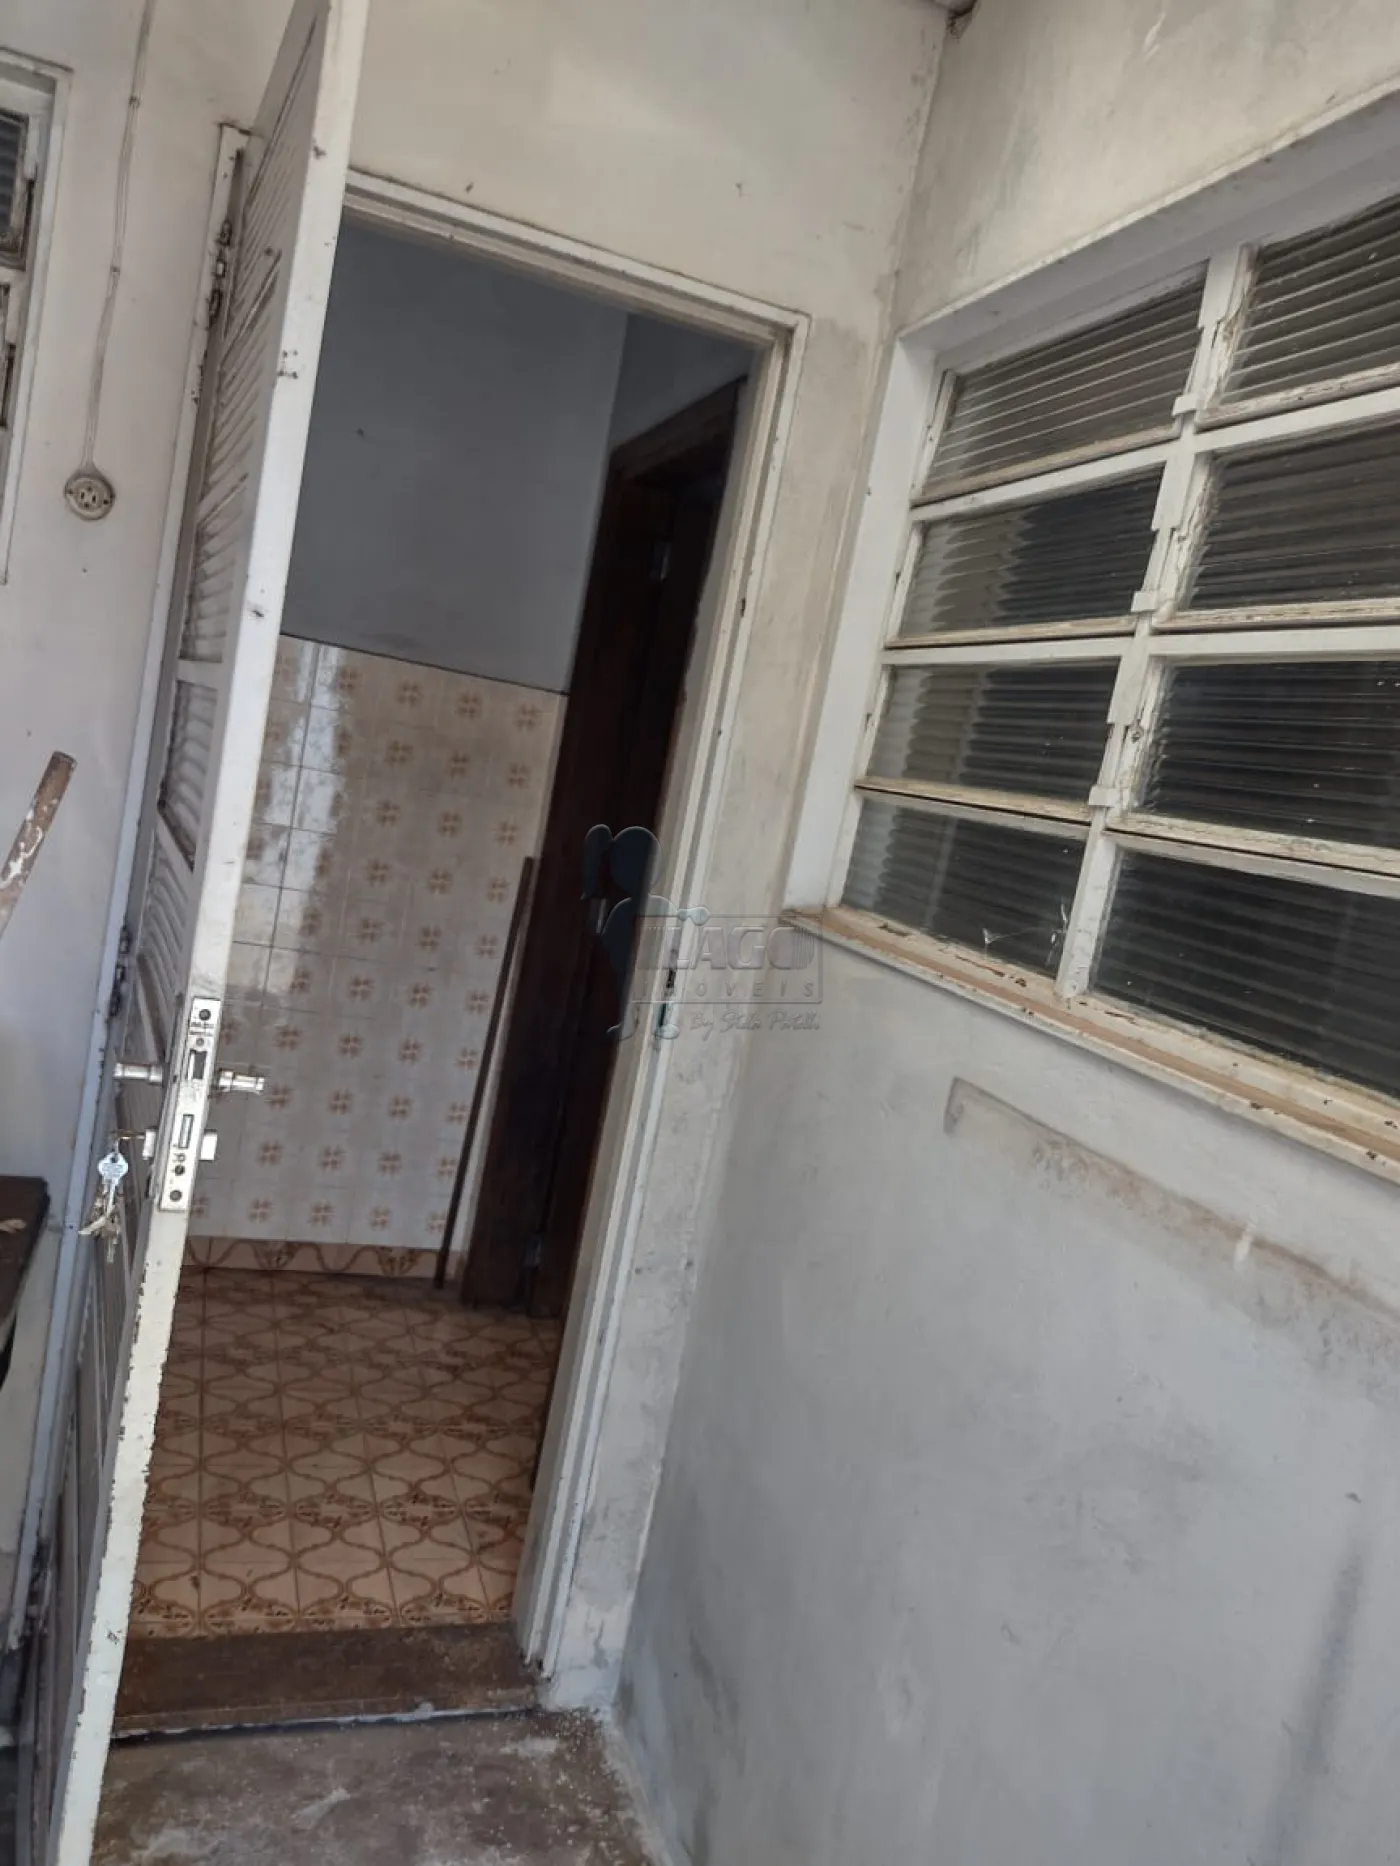 Comprar Casas / Padrão em Ribeirão Preto R$ 371.000,00 - Foto 15